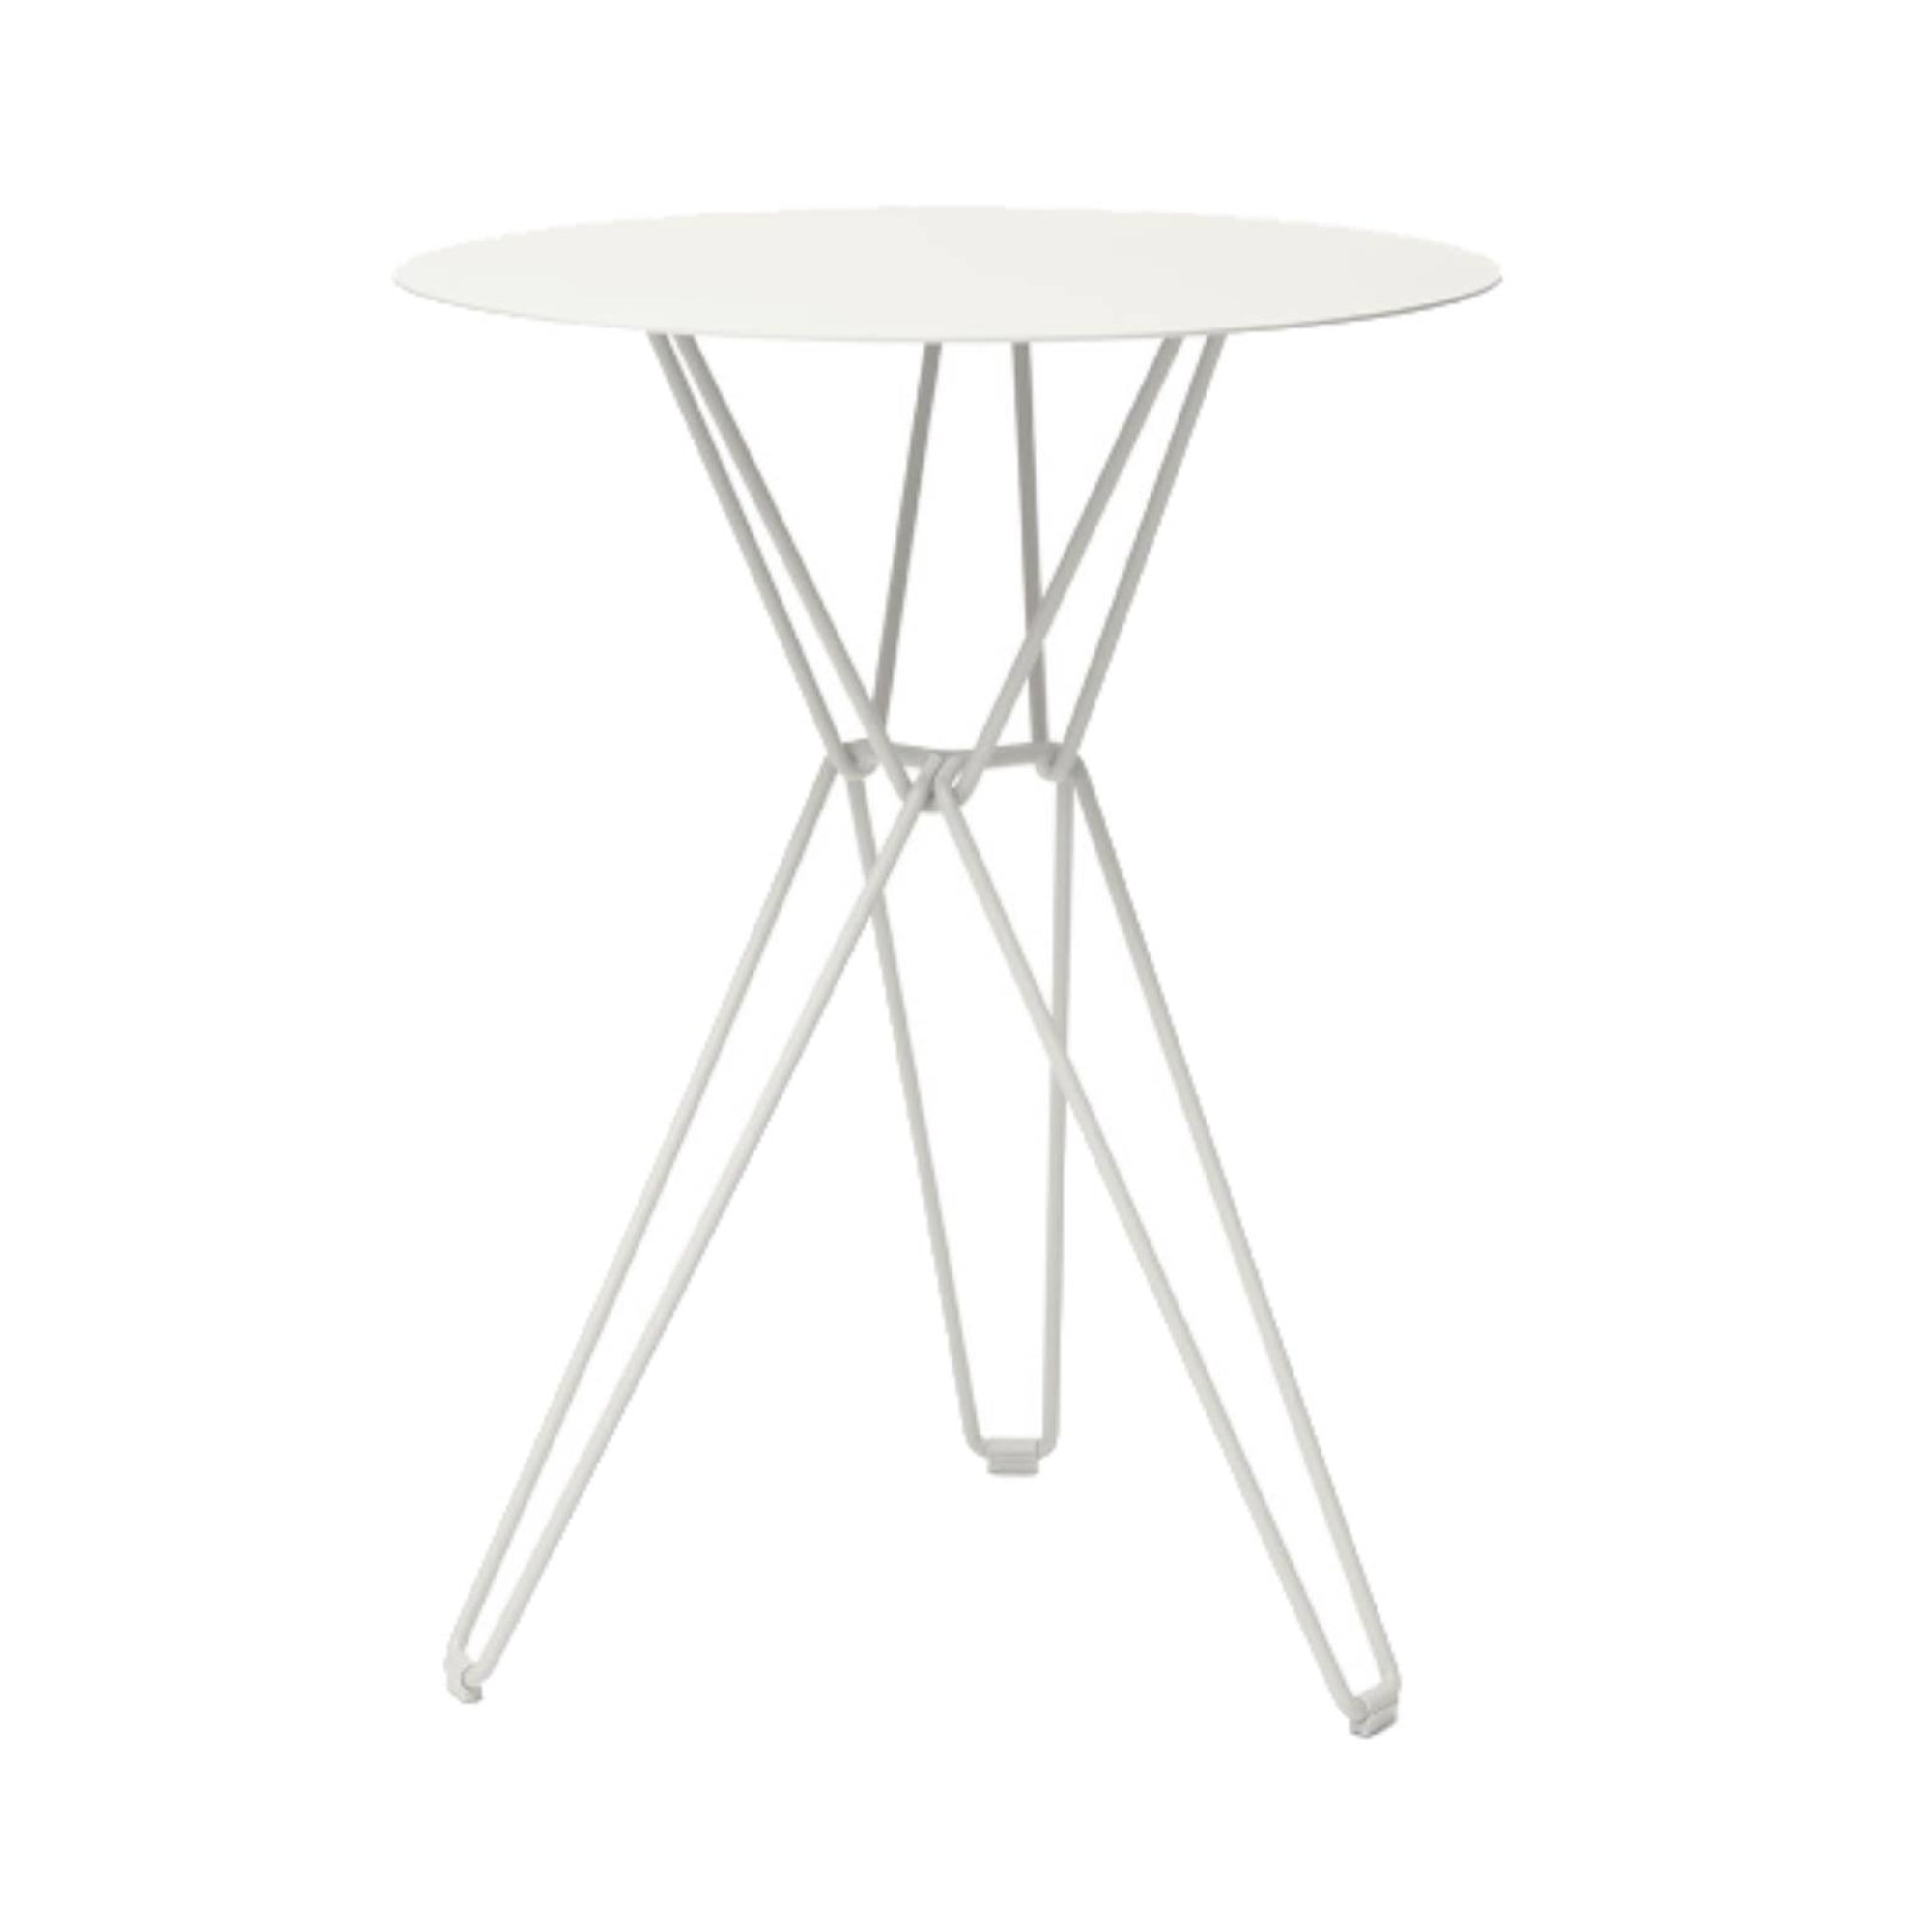 Tio Bar Table: Round + White Metal